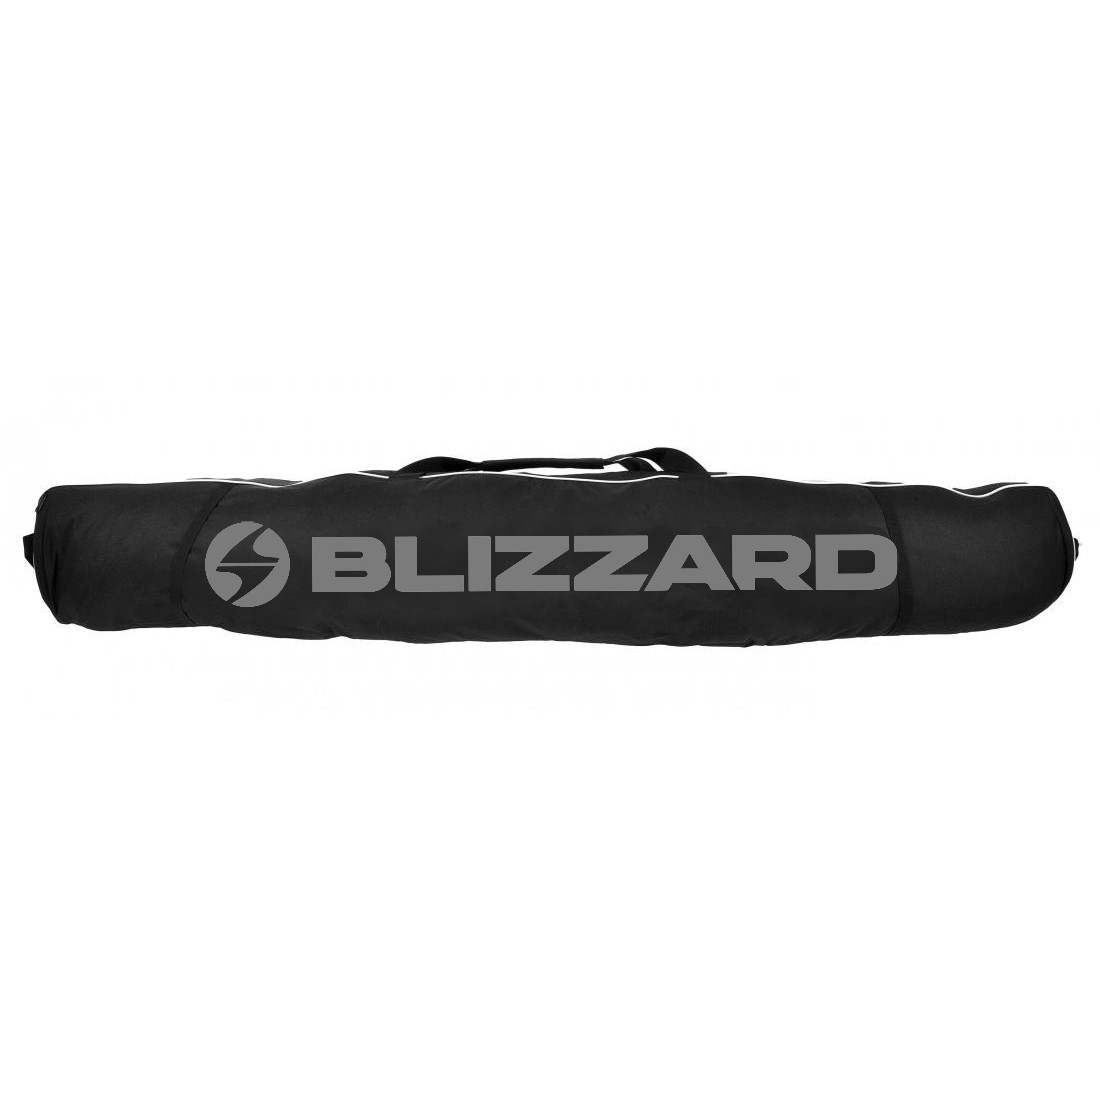 Obal na lyže Blizzard Ski bag Premium for 2 pairs